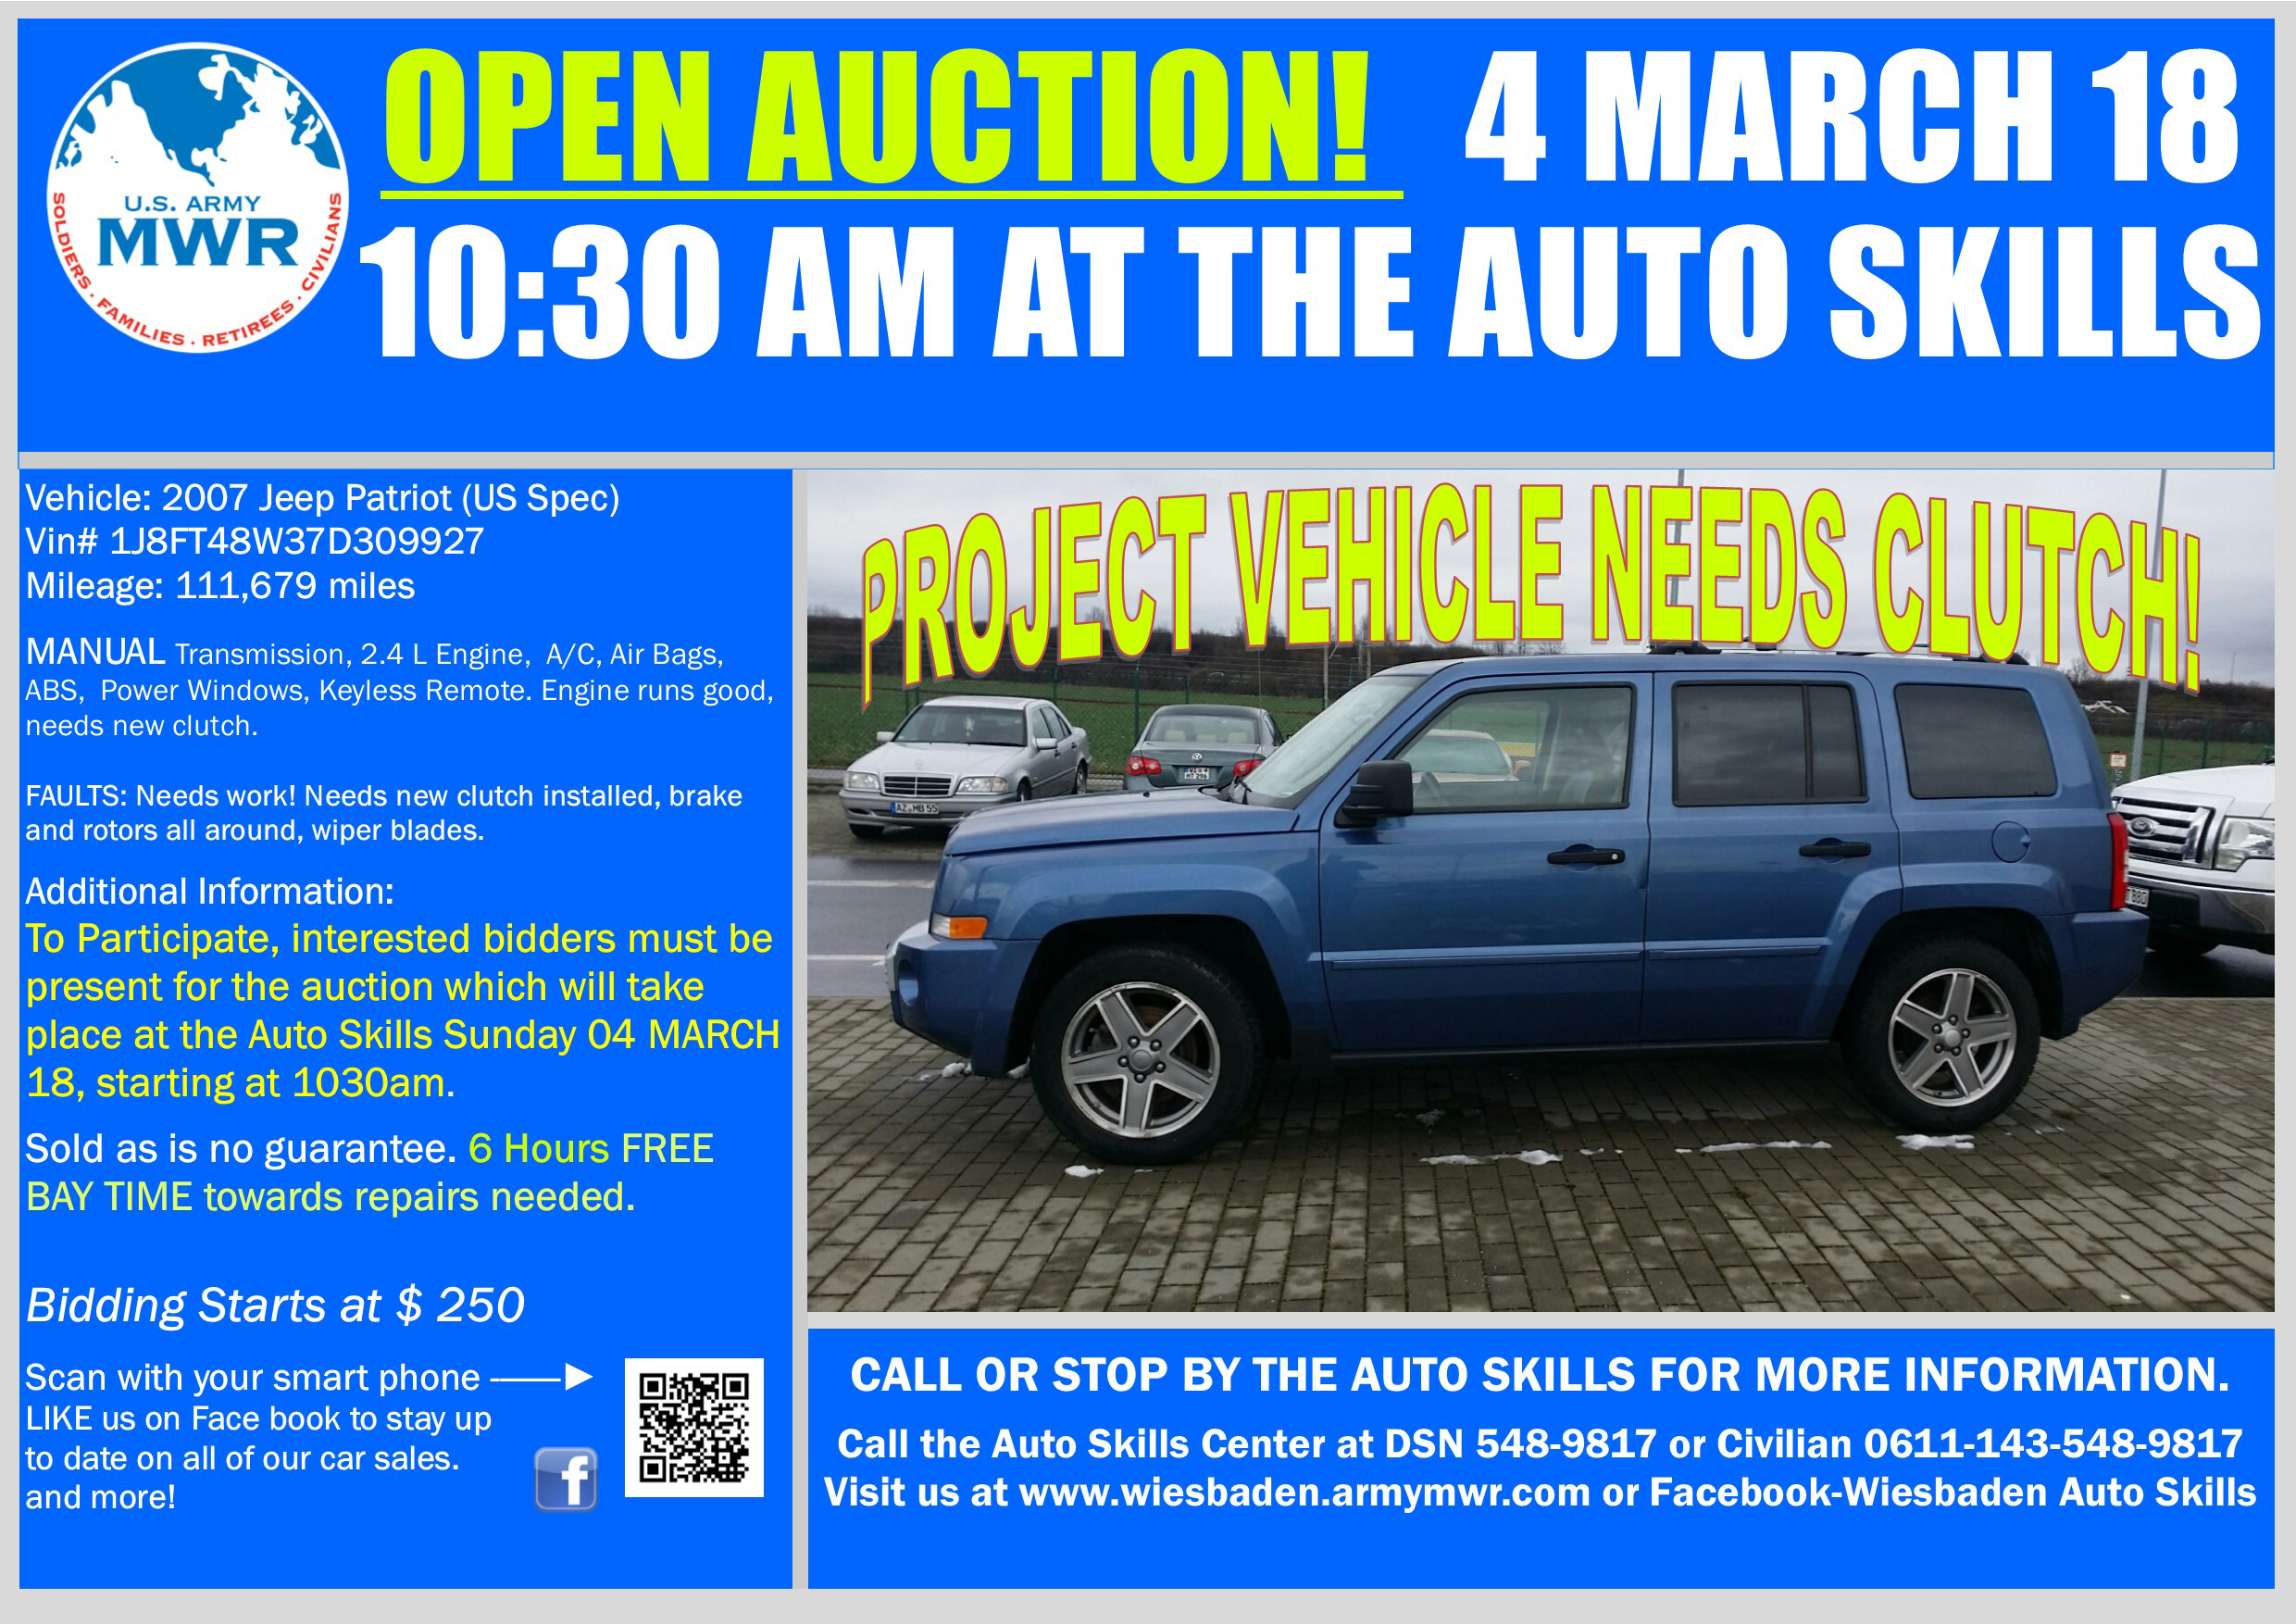 Sale_Jeep Patriot 4 March 18 Open Auction.jpg